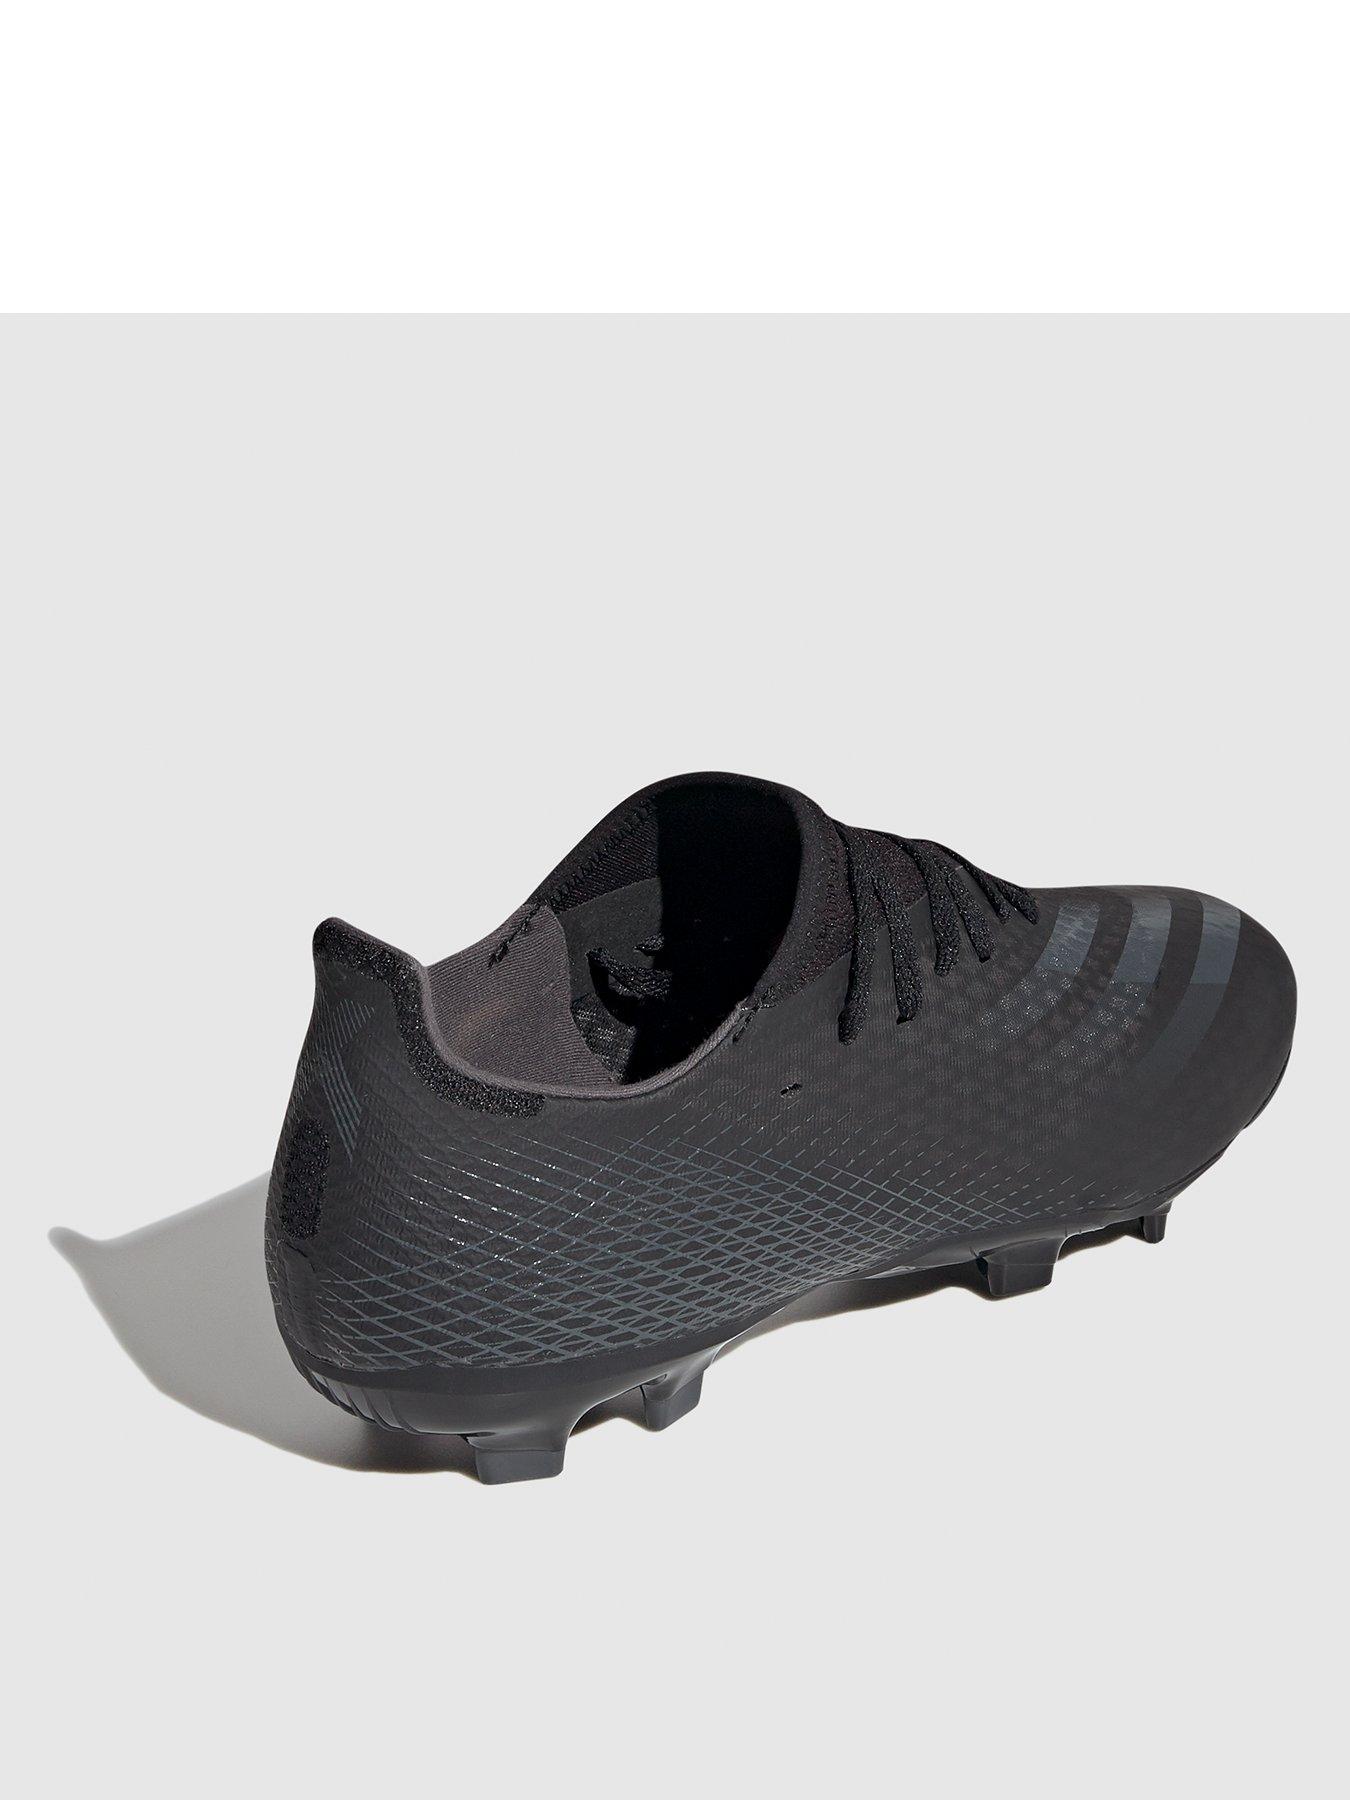 black adidas football trainers